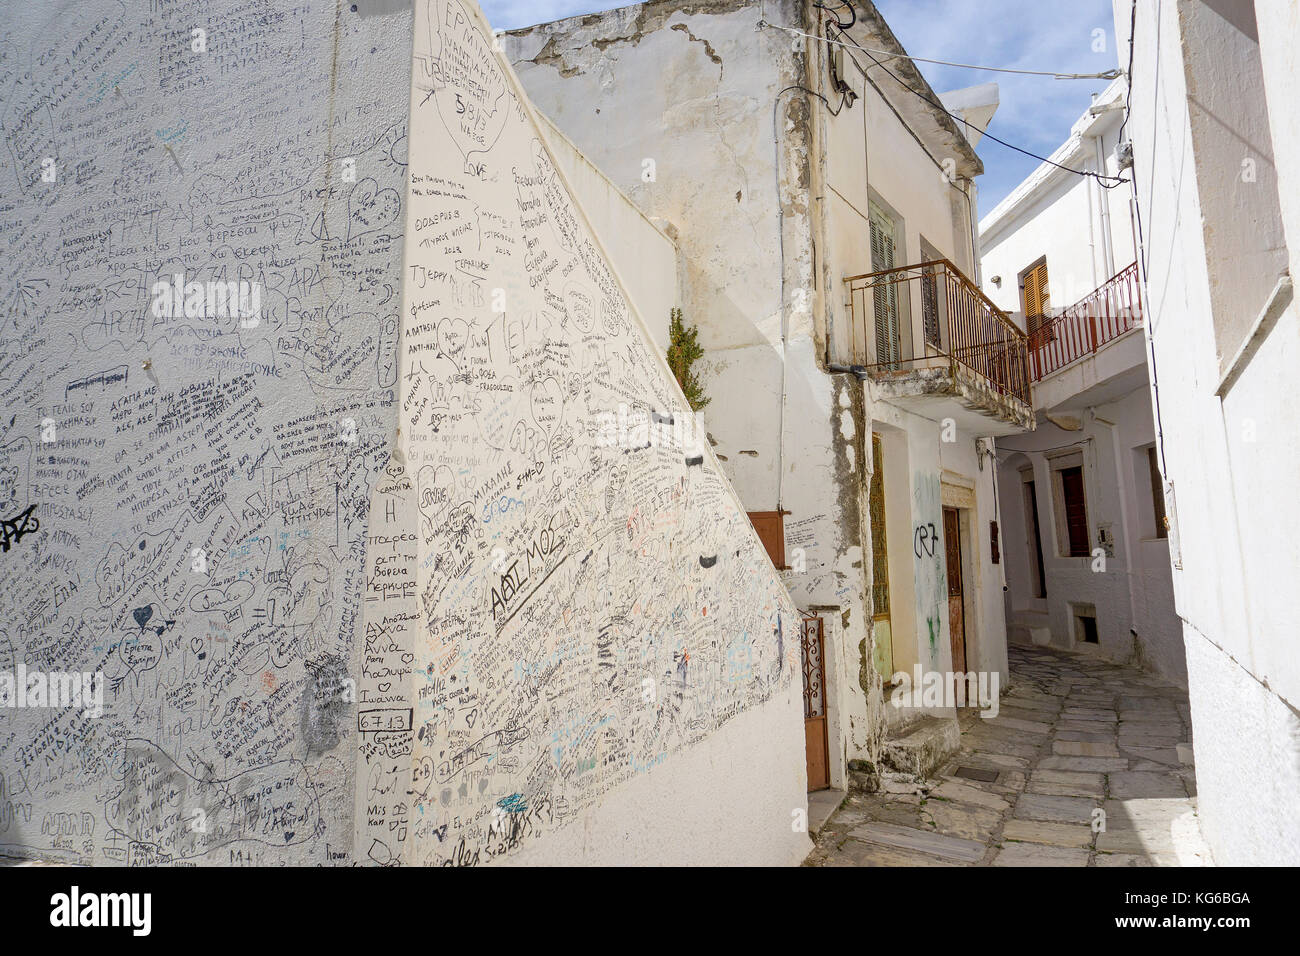 Pared cubierta con escritos y pinturas, Mountain Village Apiranthos, Naxos Island, las Islas Cícladas, del mar Egeo, Grecia Foto de stock